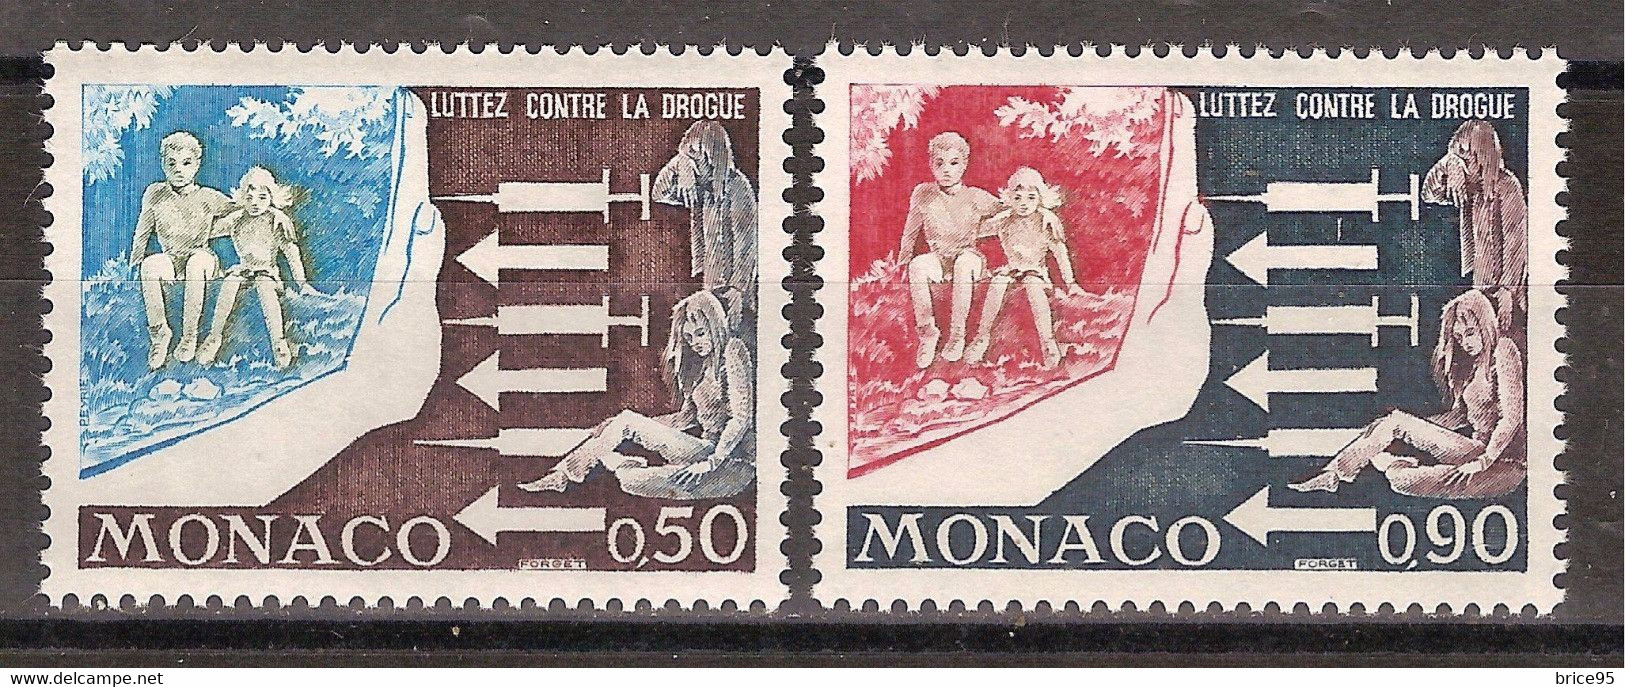 Monaco - Yt N° 951 à 952  ** - Neuf Sans Charnière - 1973 - Unused Stamps